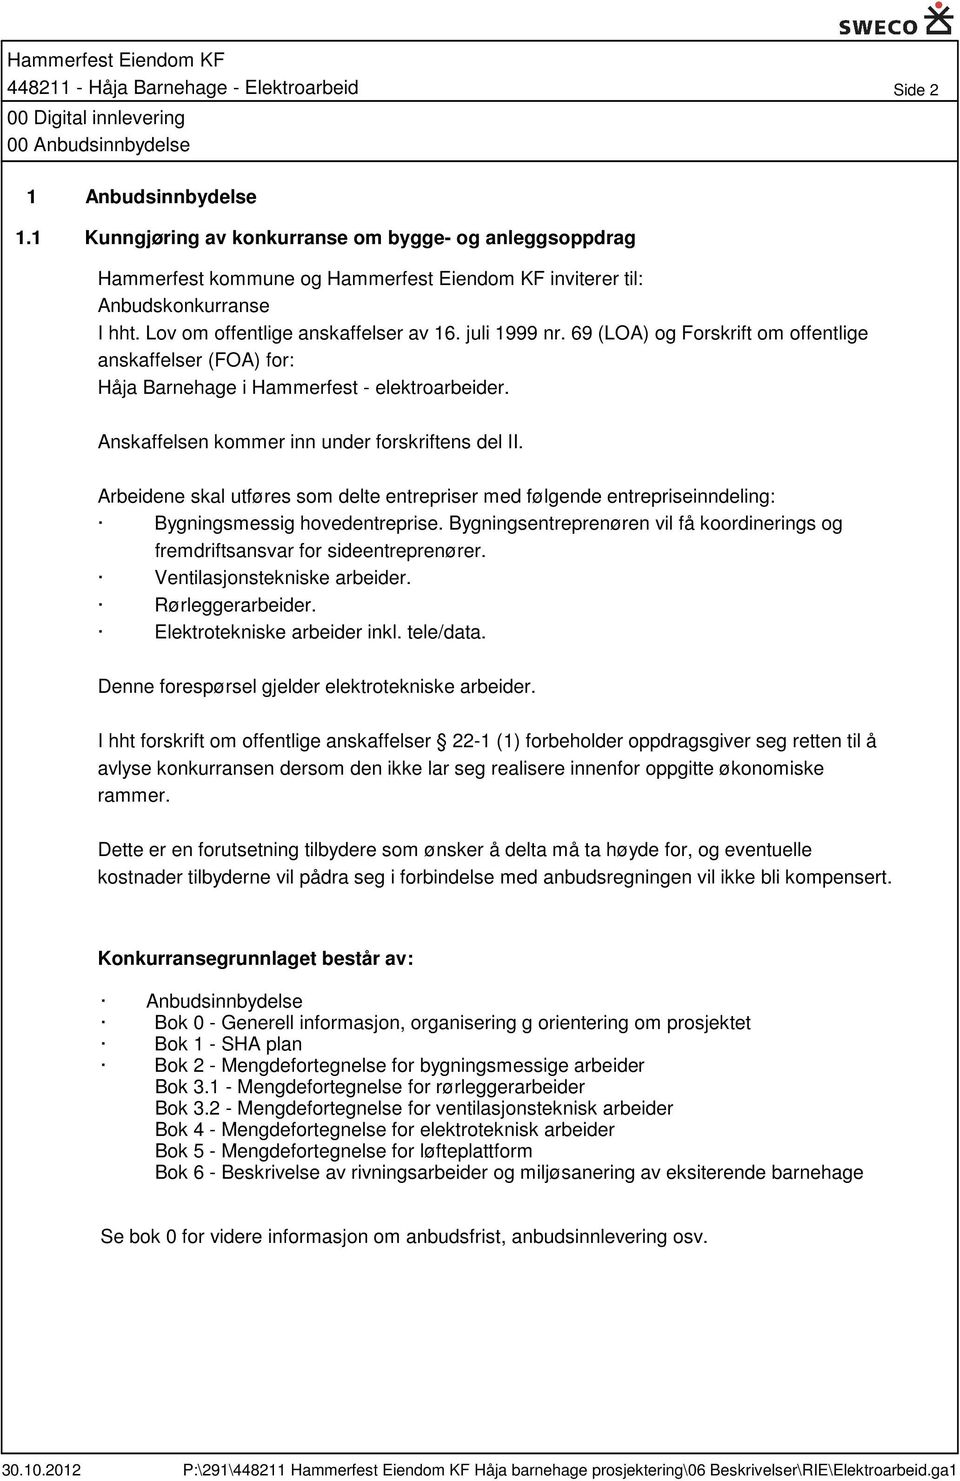 69 (LOA) og Forskrift om offentlige anskaffelser (FOA) for: Håja Barnehage i Hammerfest - elektroarbeider. Anskaffelsen kommer inn under forskriftens del II.